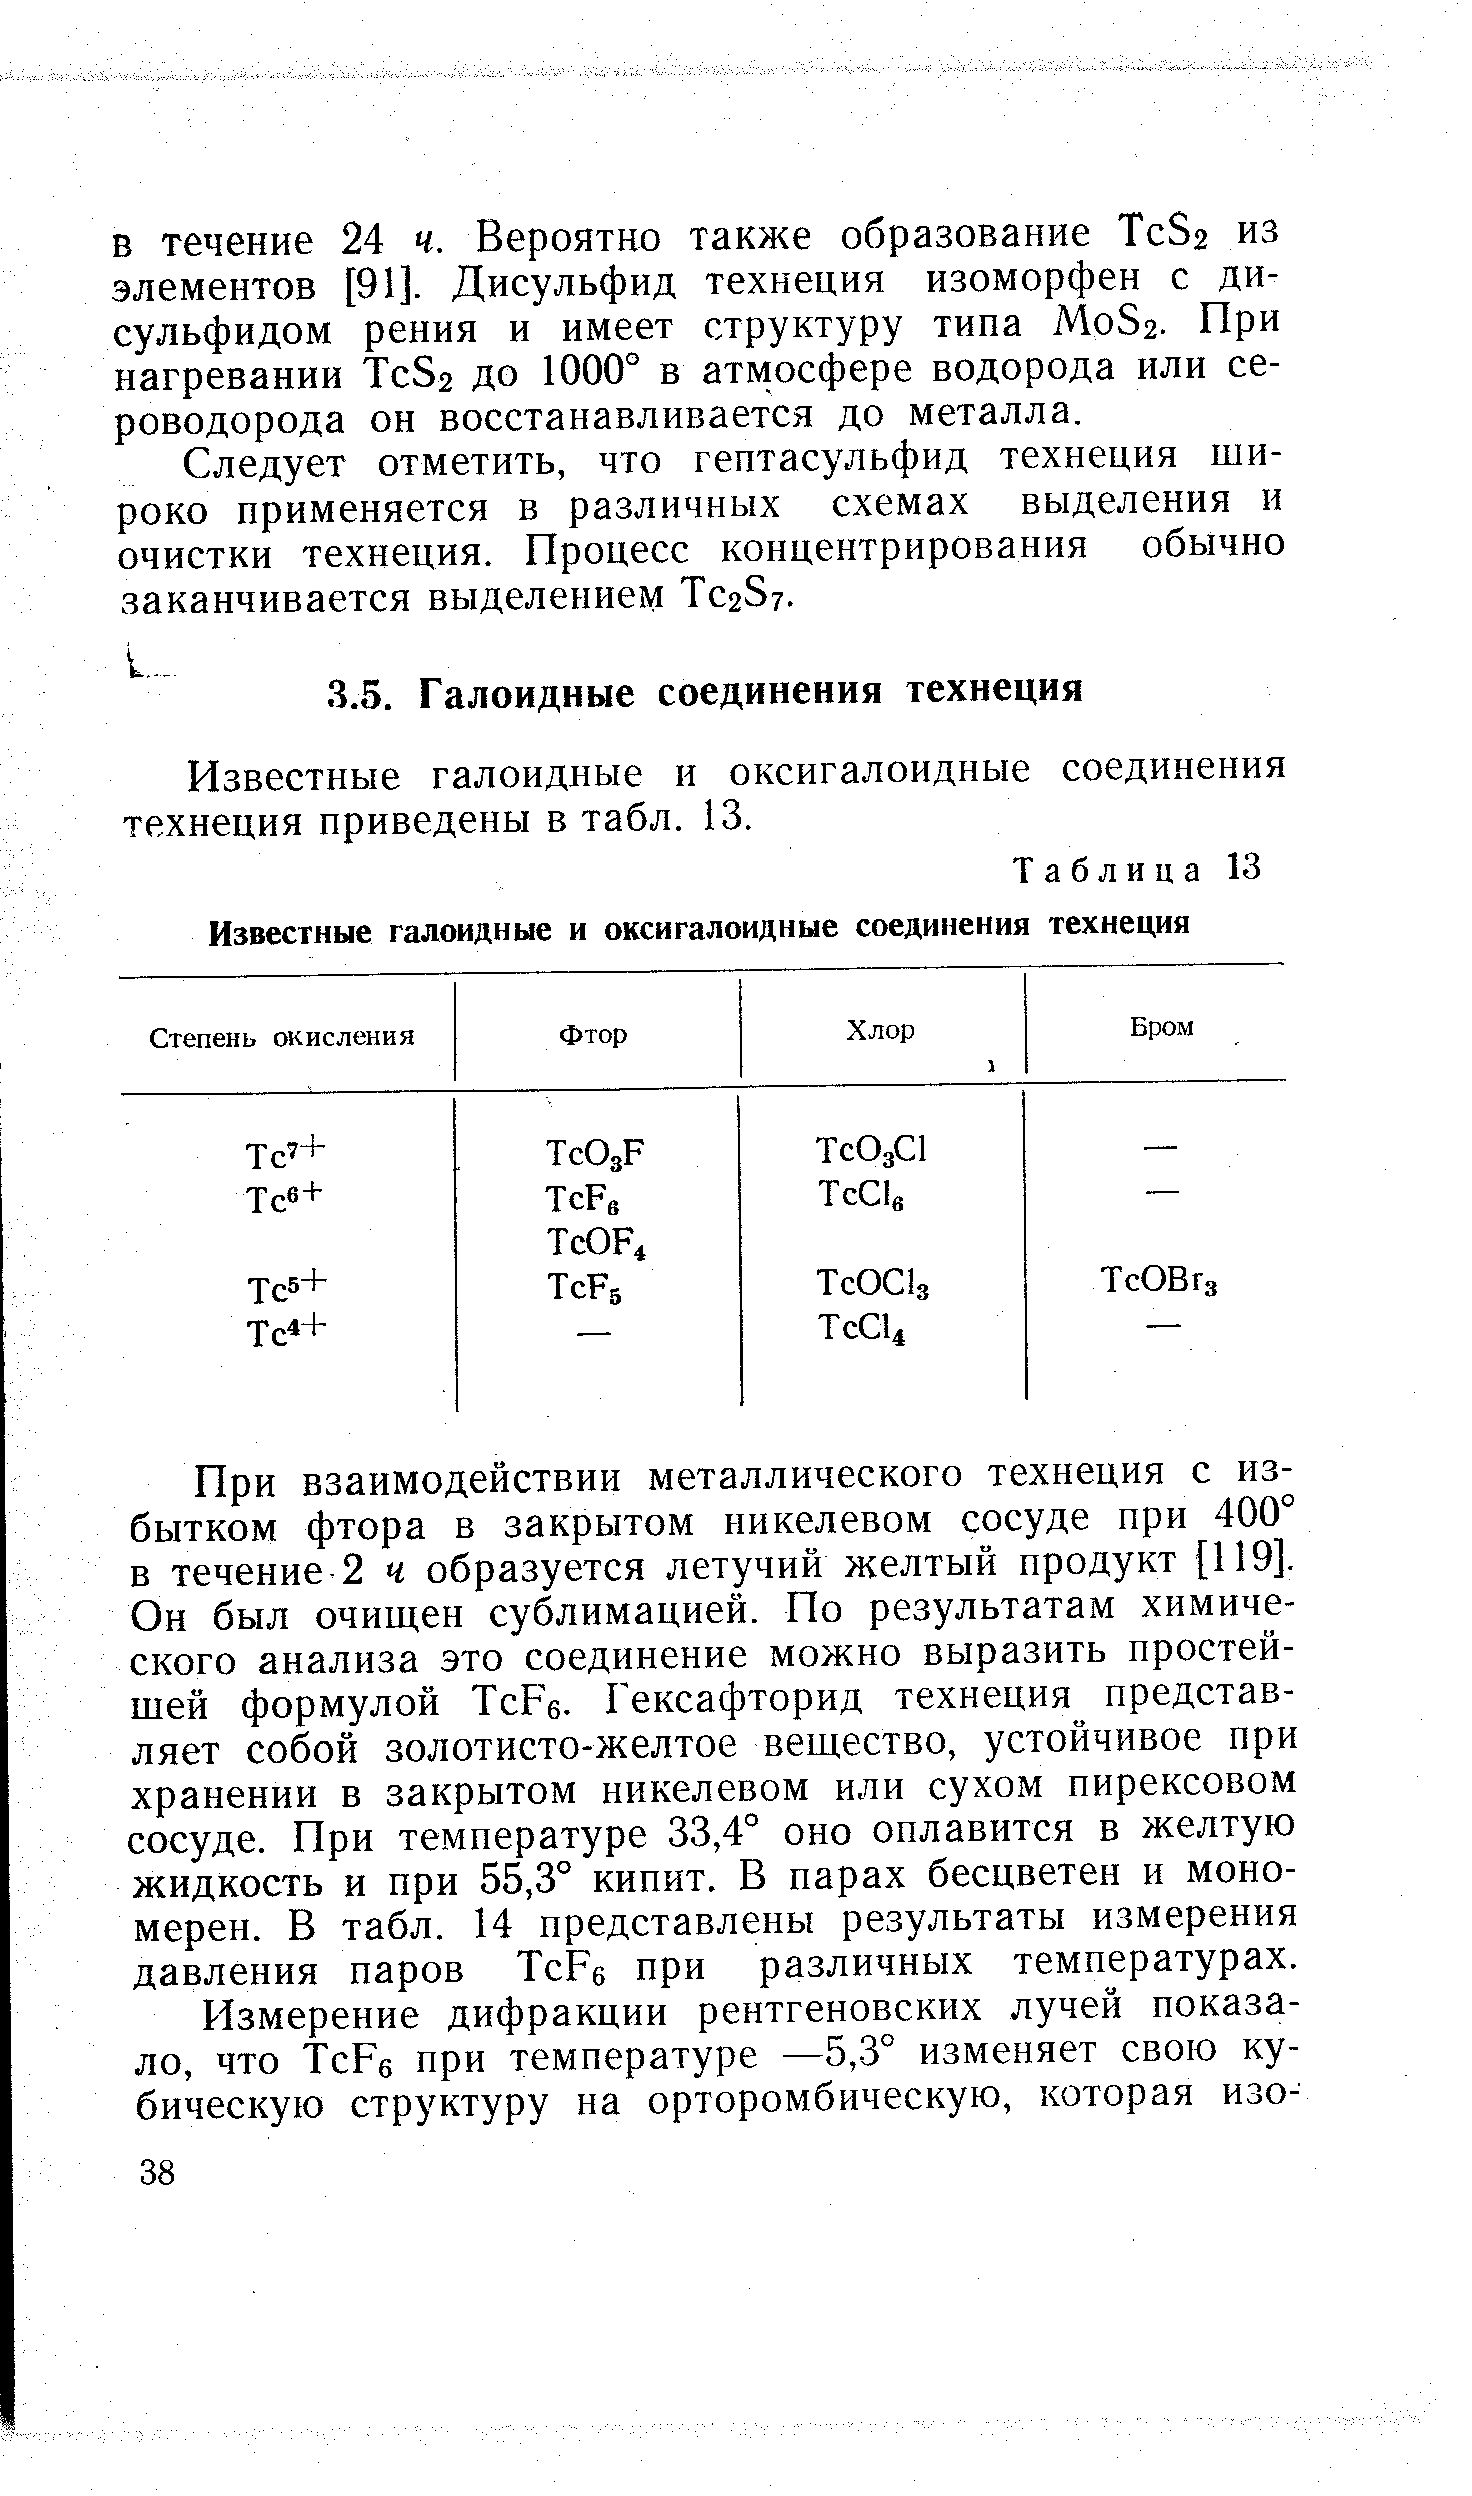 Известные галоидные и оксигалоидные соединения технеция приведены в табл. 13.